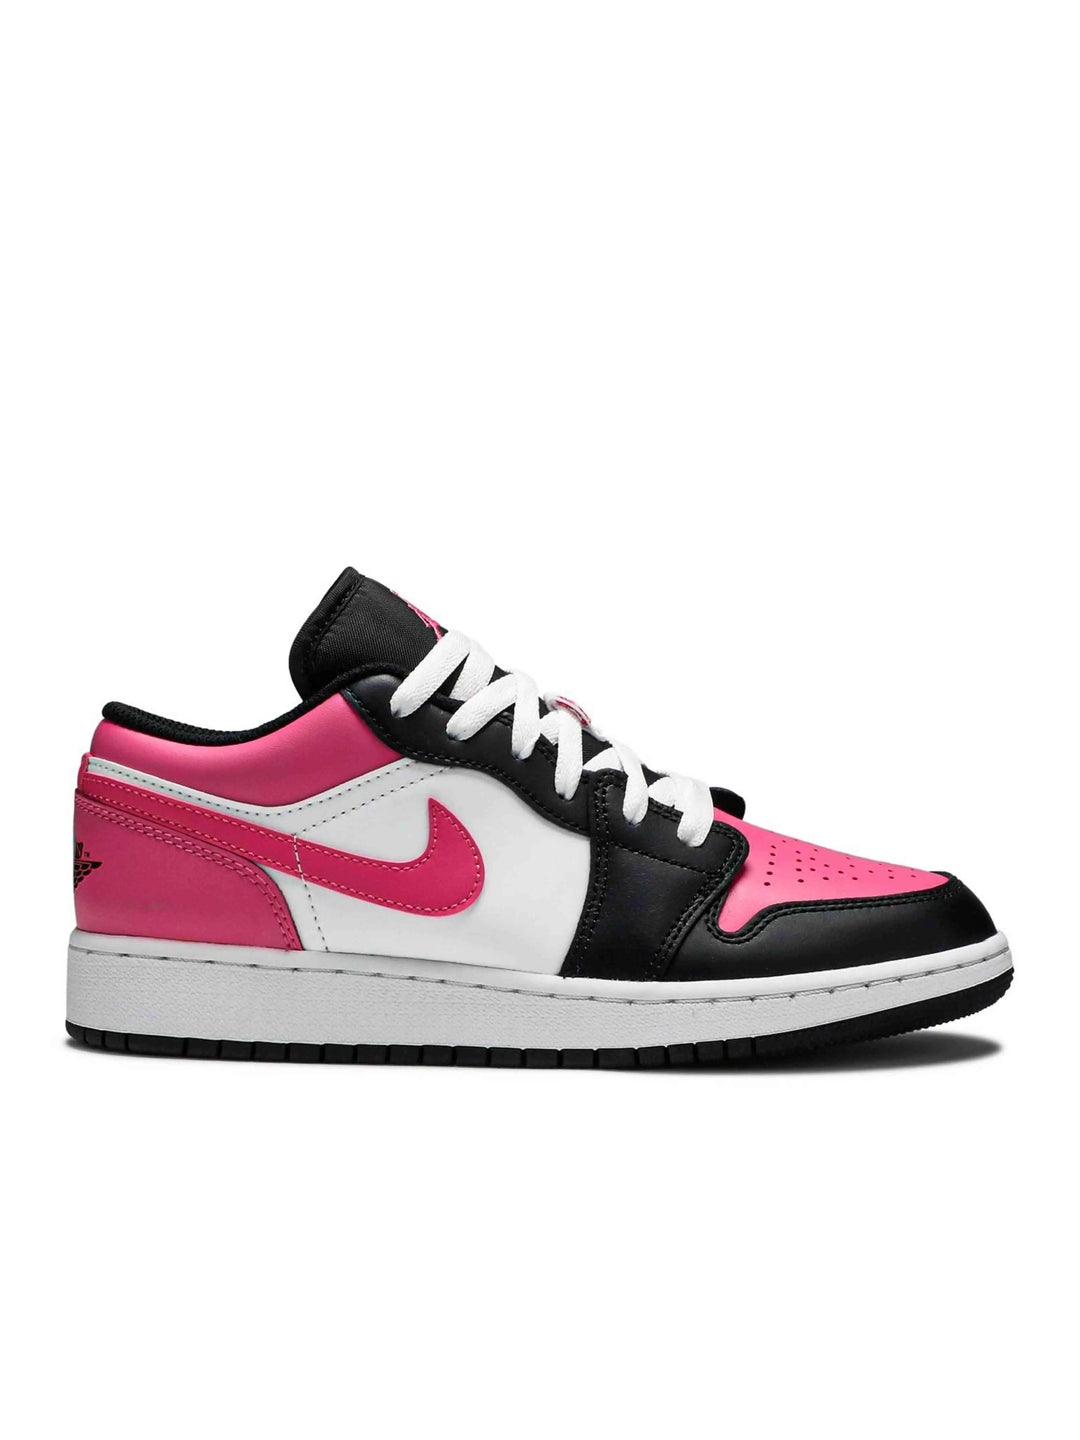 Nike Air Jordan 1 Low Pinksicle Jordan Brand